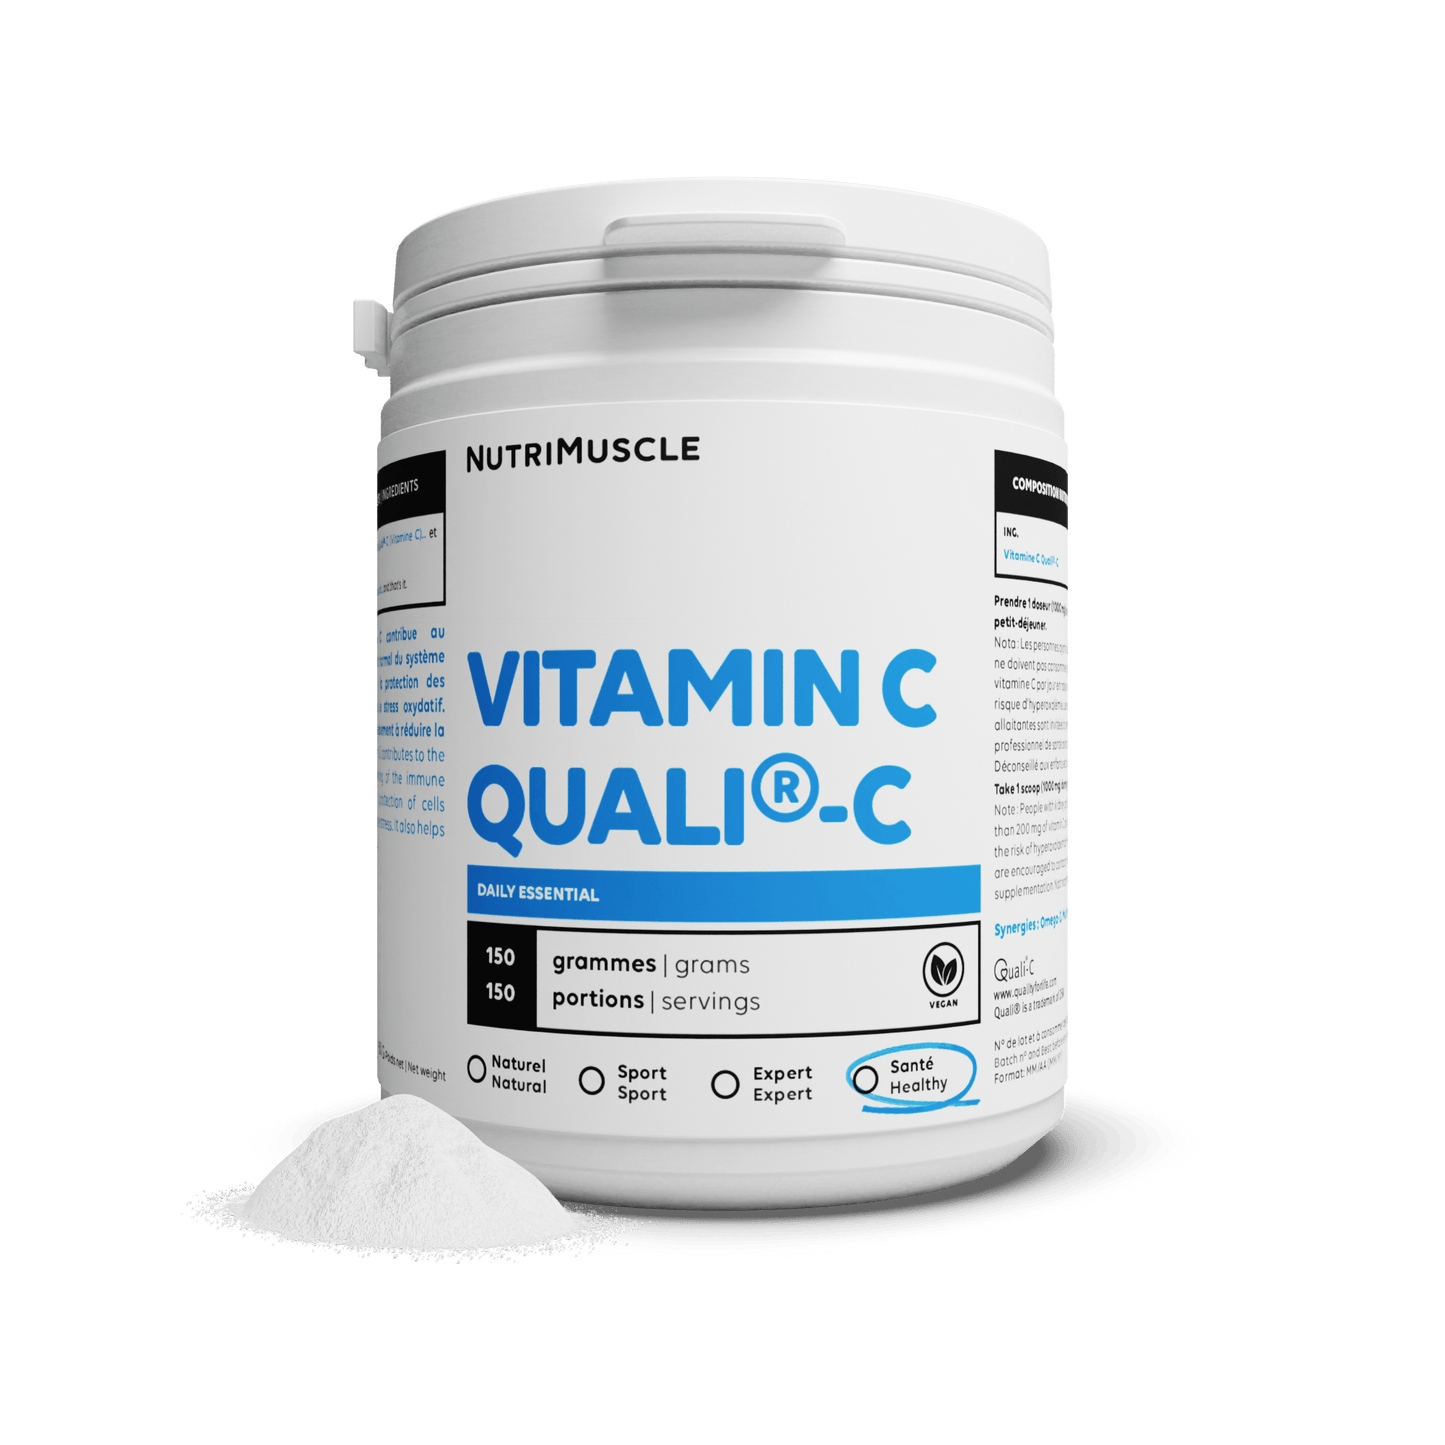 Nutrimuscle 150 g Vitamine C Quali®C en poudre